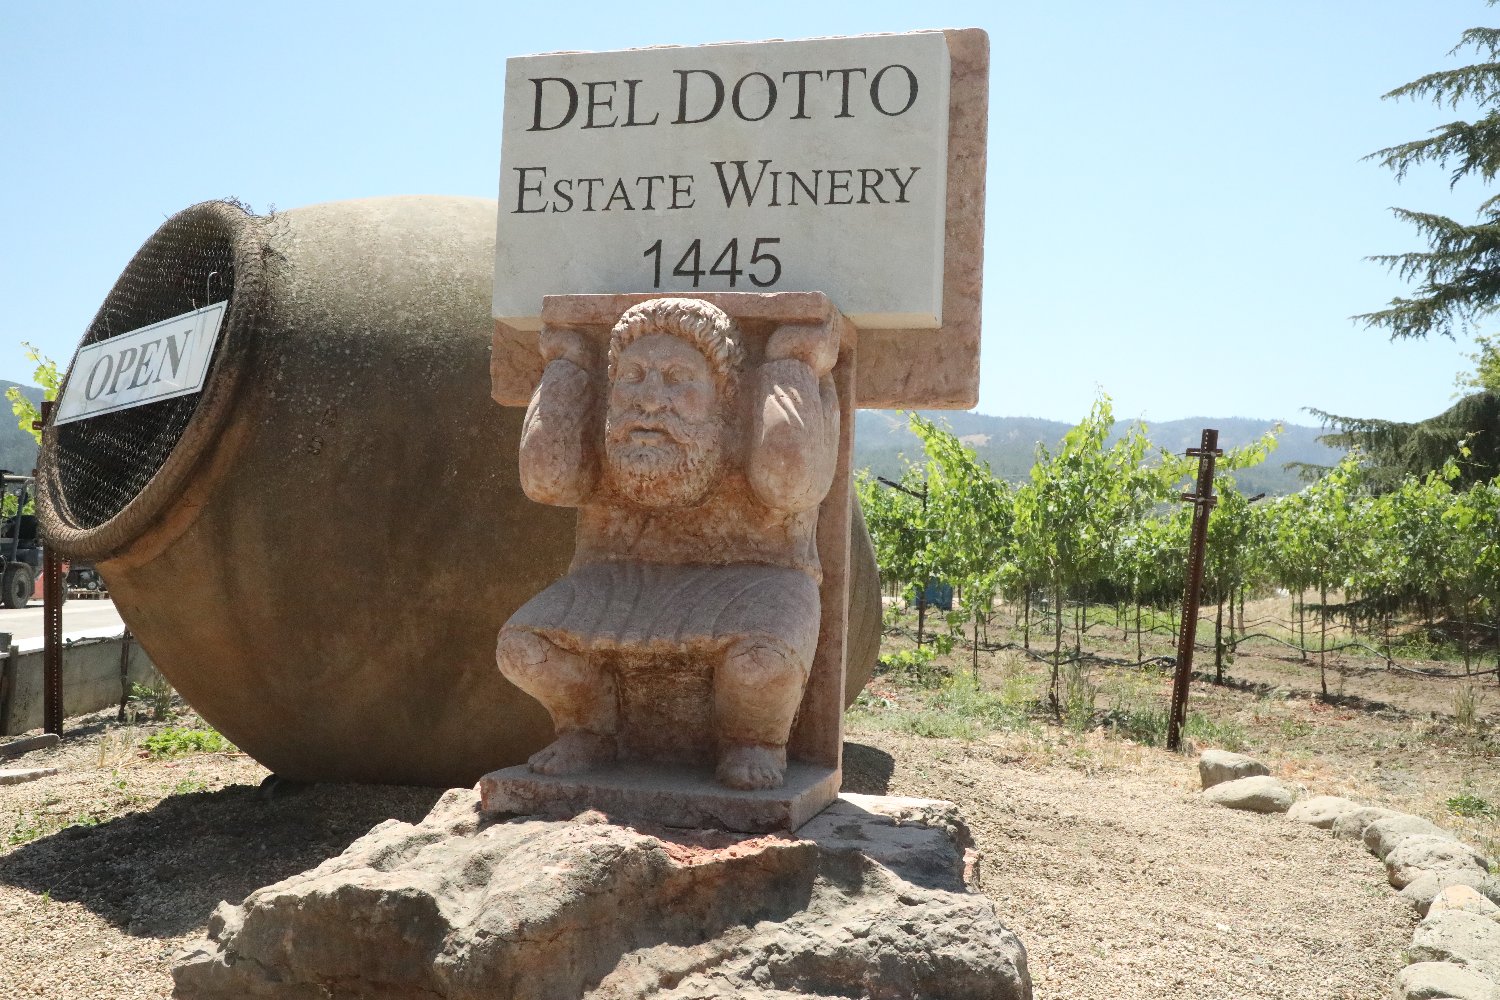 Del Dotto Estate Winery & Caves - The Napa Wine Project